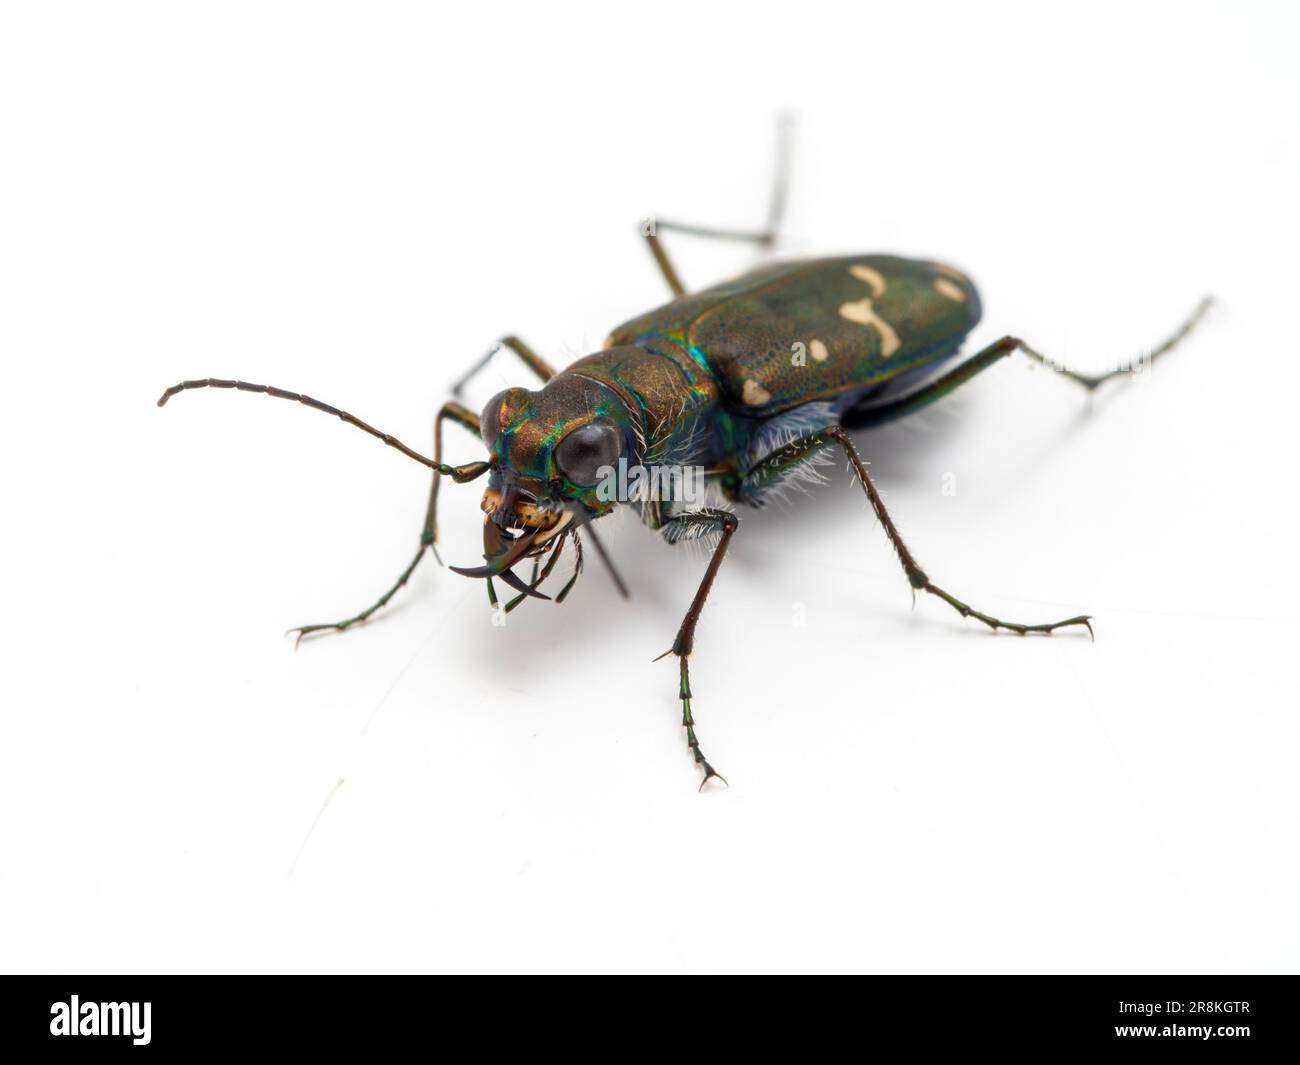 Western tiger beetle (Cicindela oregona), isolated on white Stock Photo